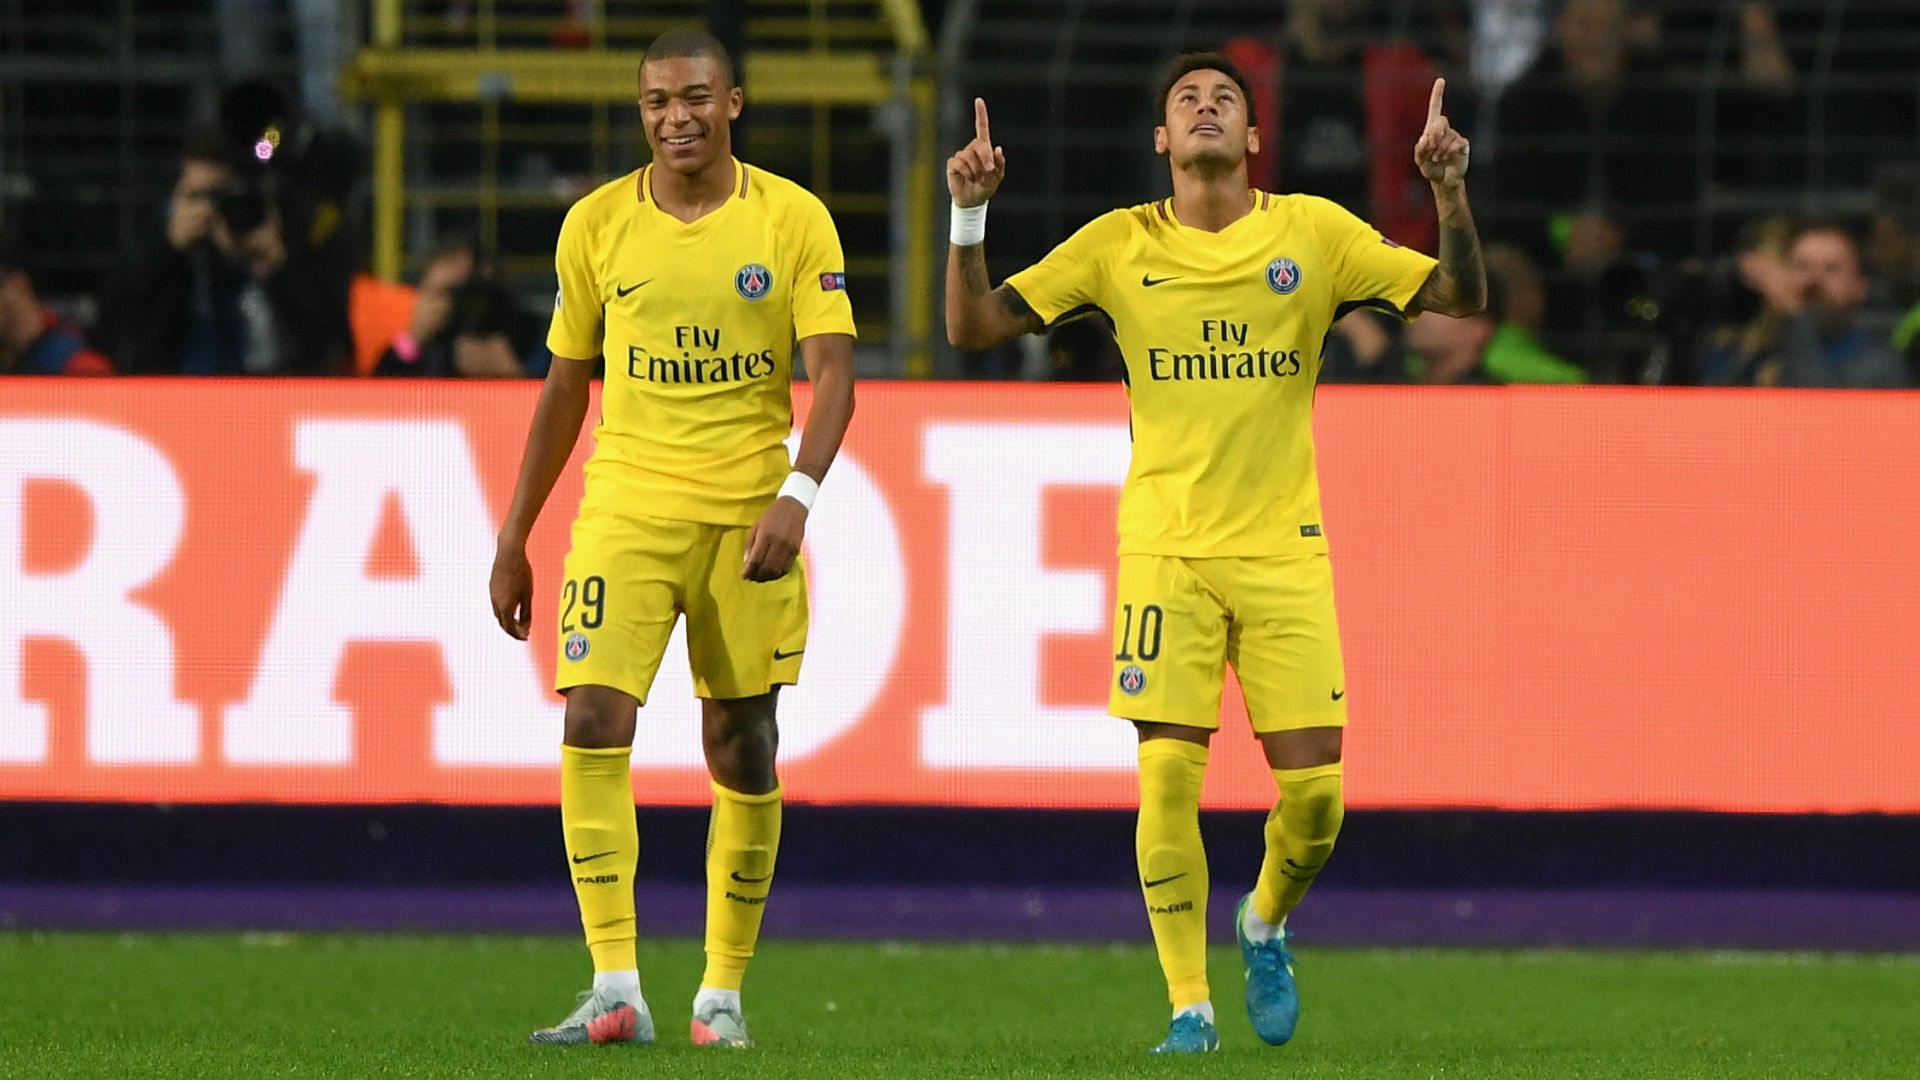 Neymar And Hazard Career Goals - HD Wallpaper 